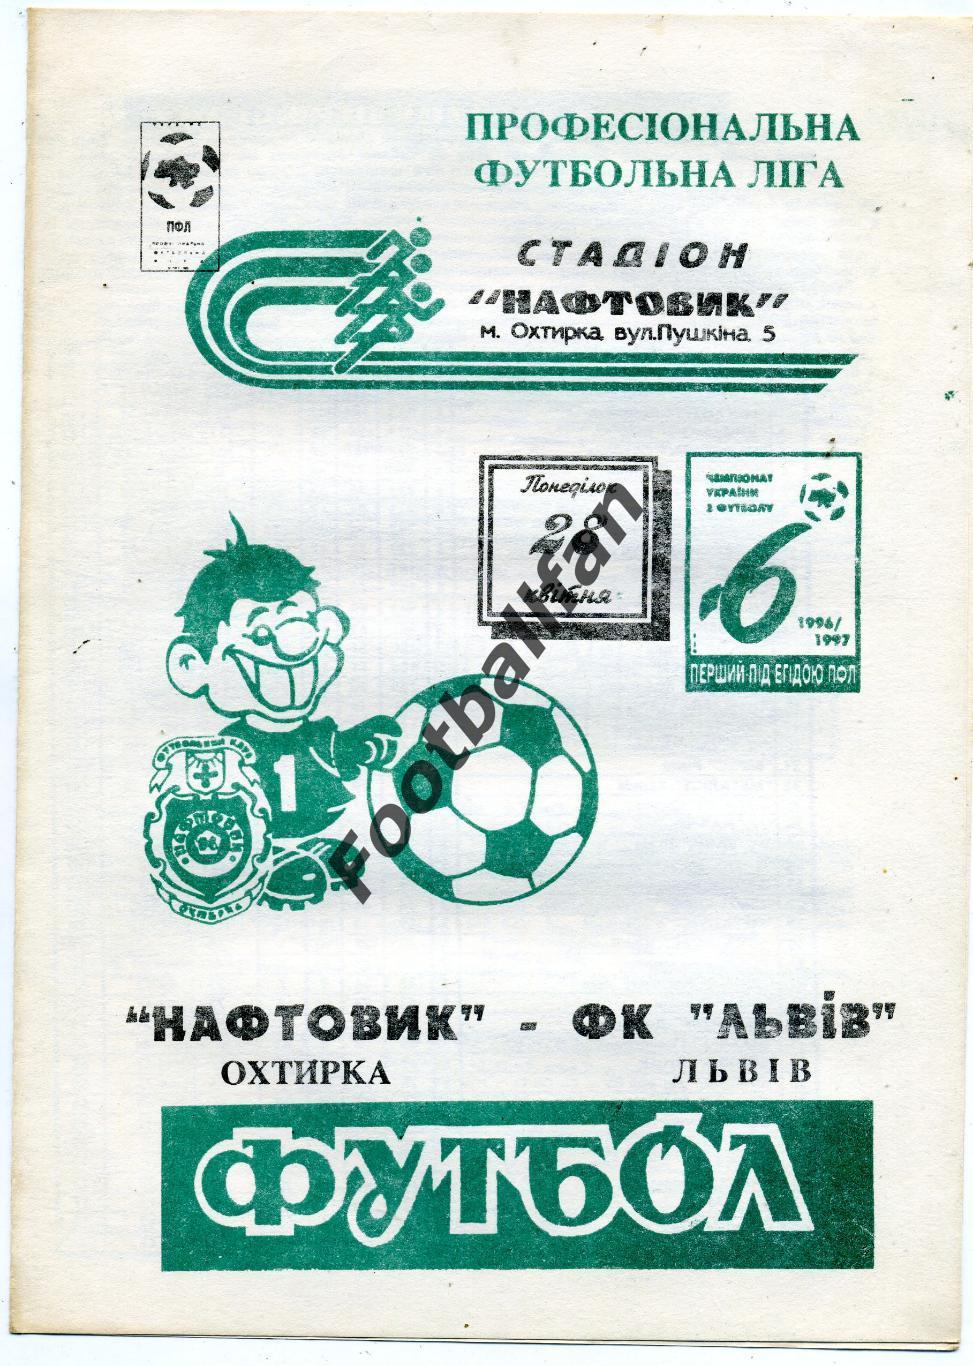 Нефтяник Ахтырка - ФК Львов 28.04.1997